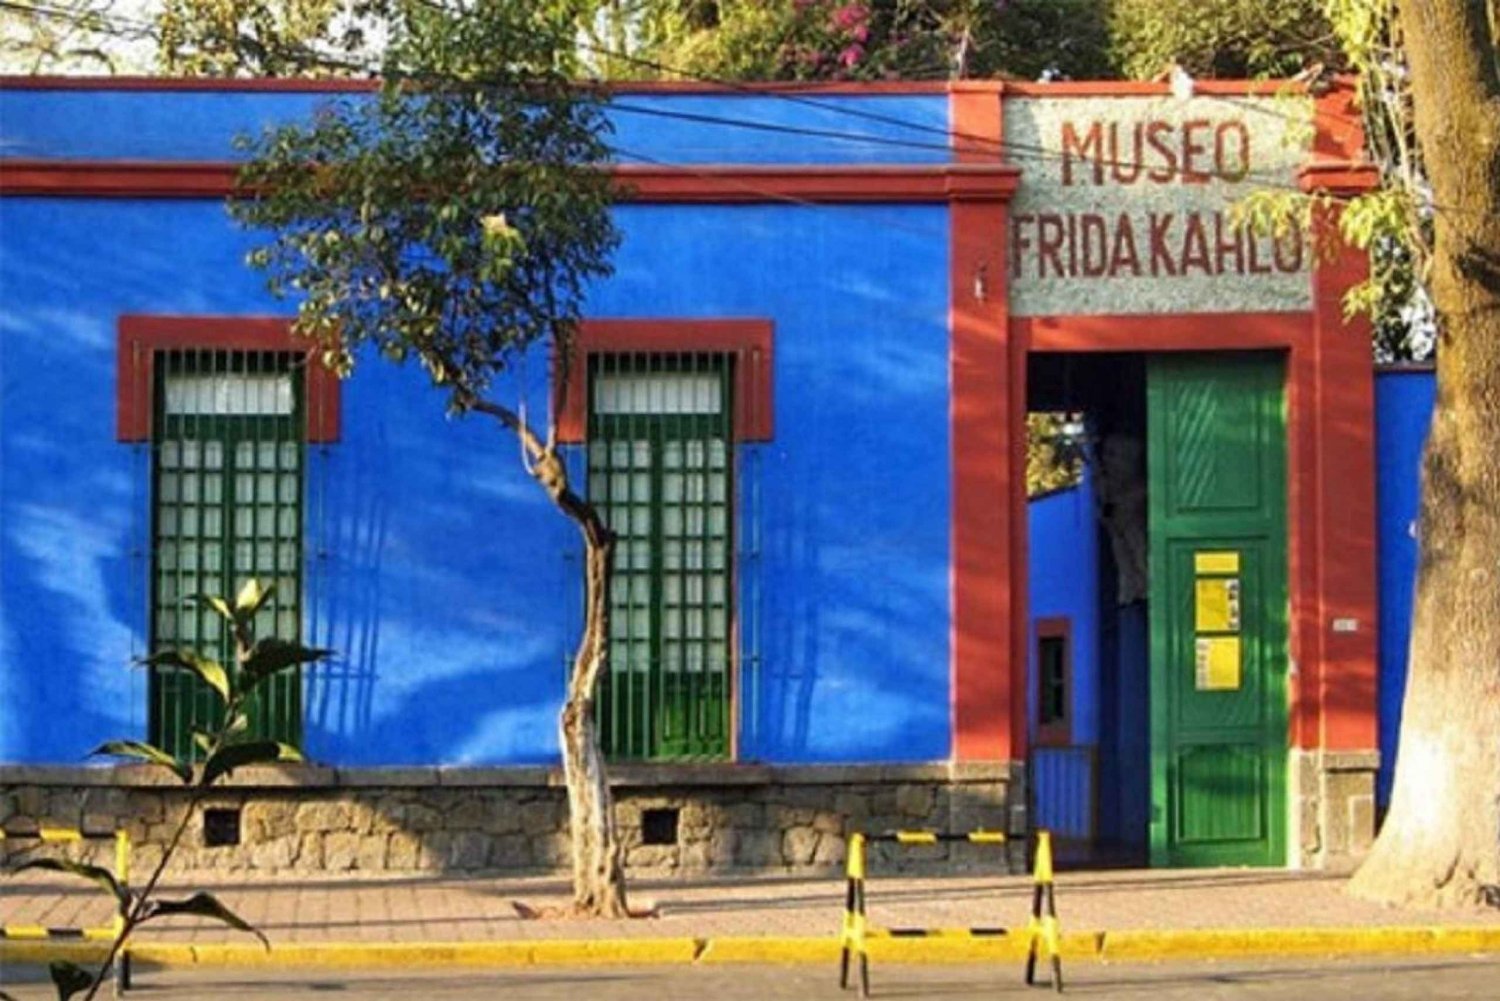 Ciudad de México: Recorrido por Xochimilco, Coyoacán y el Museo de Frida Kahlo